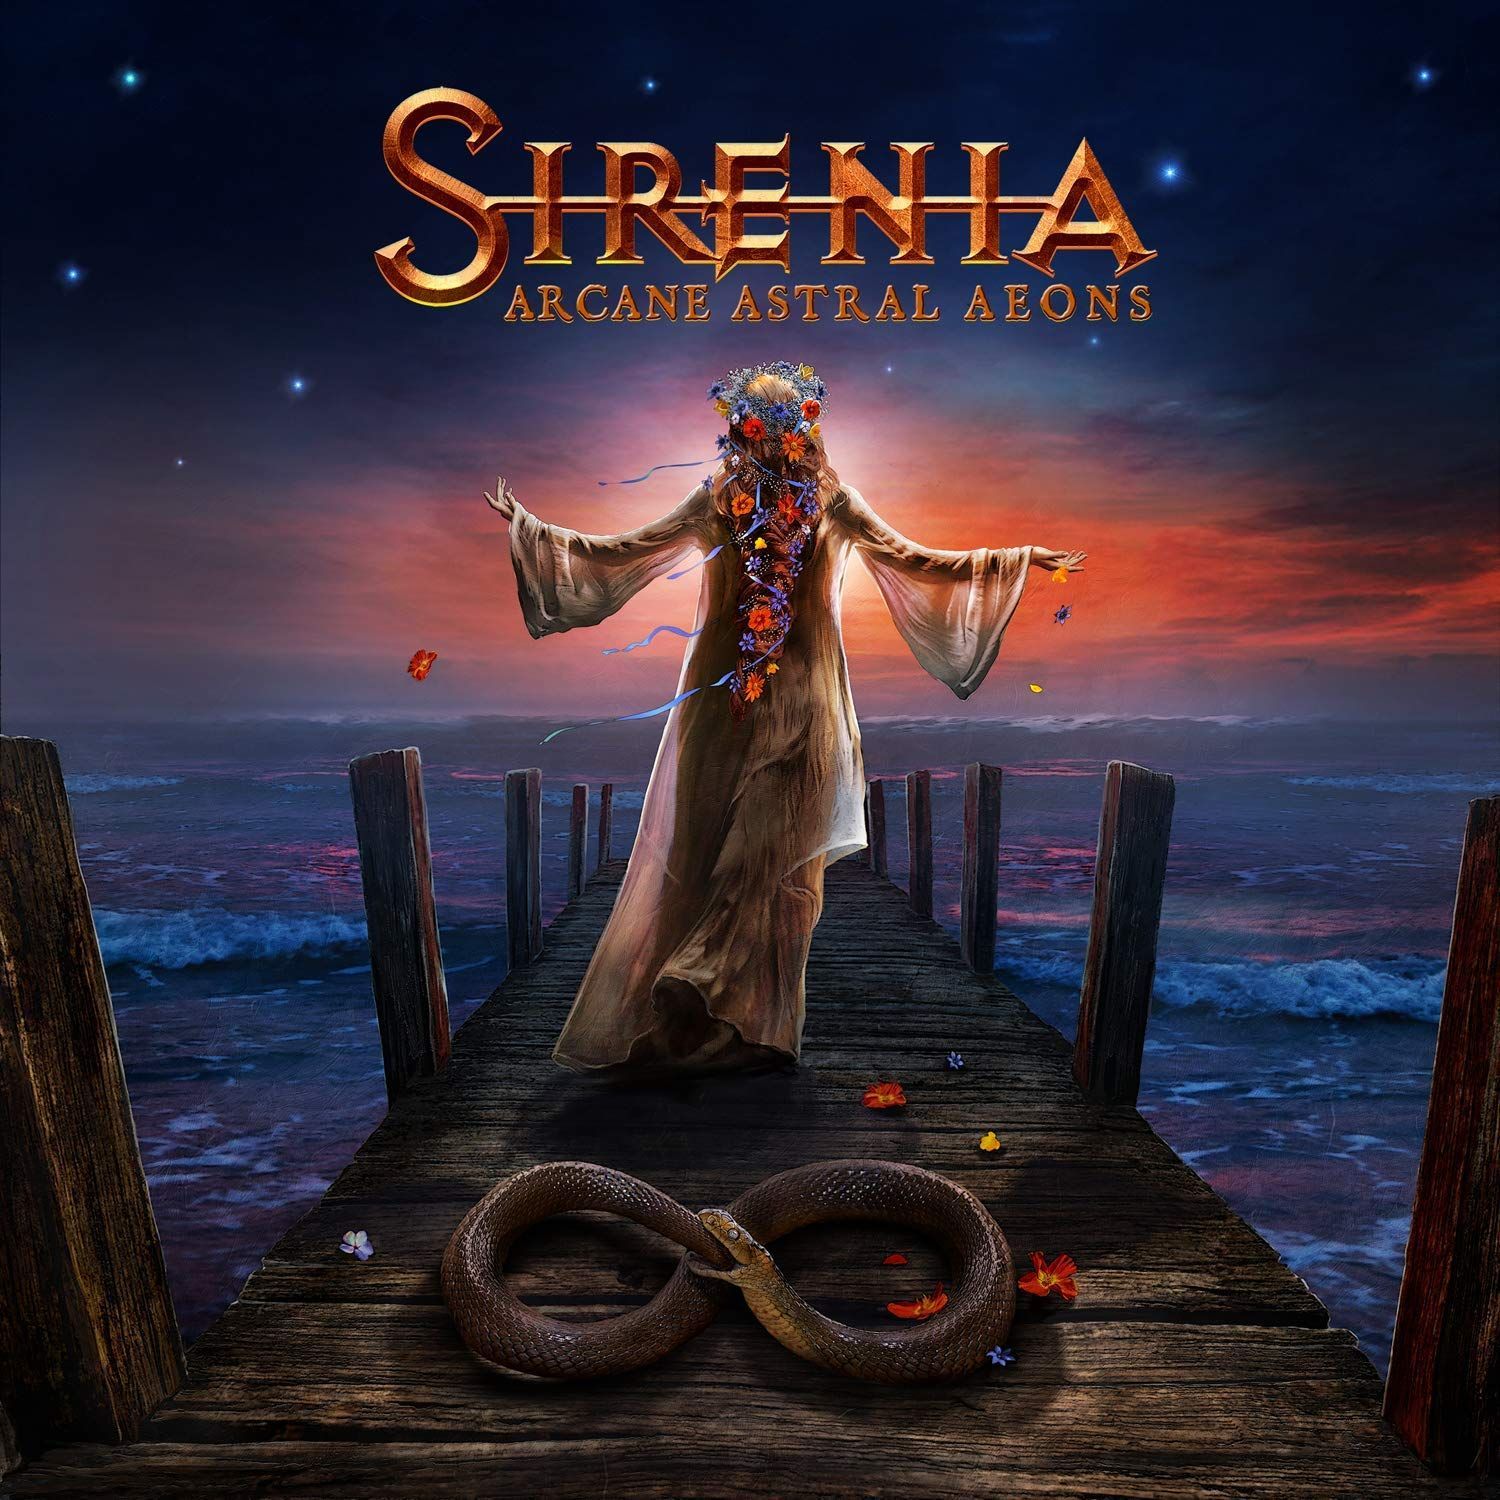 Sirenia - Trailer album 2018